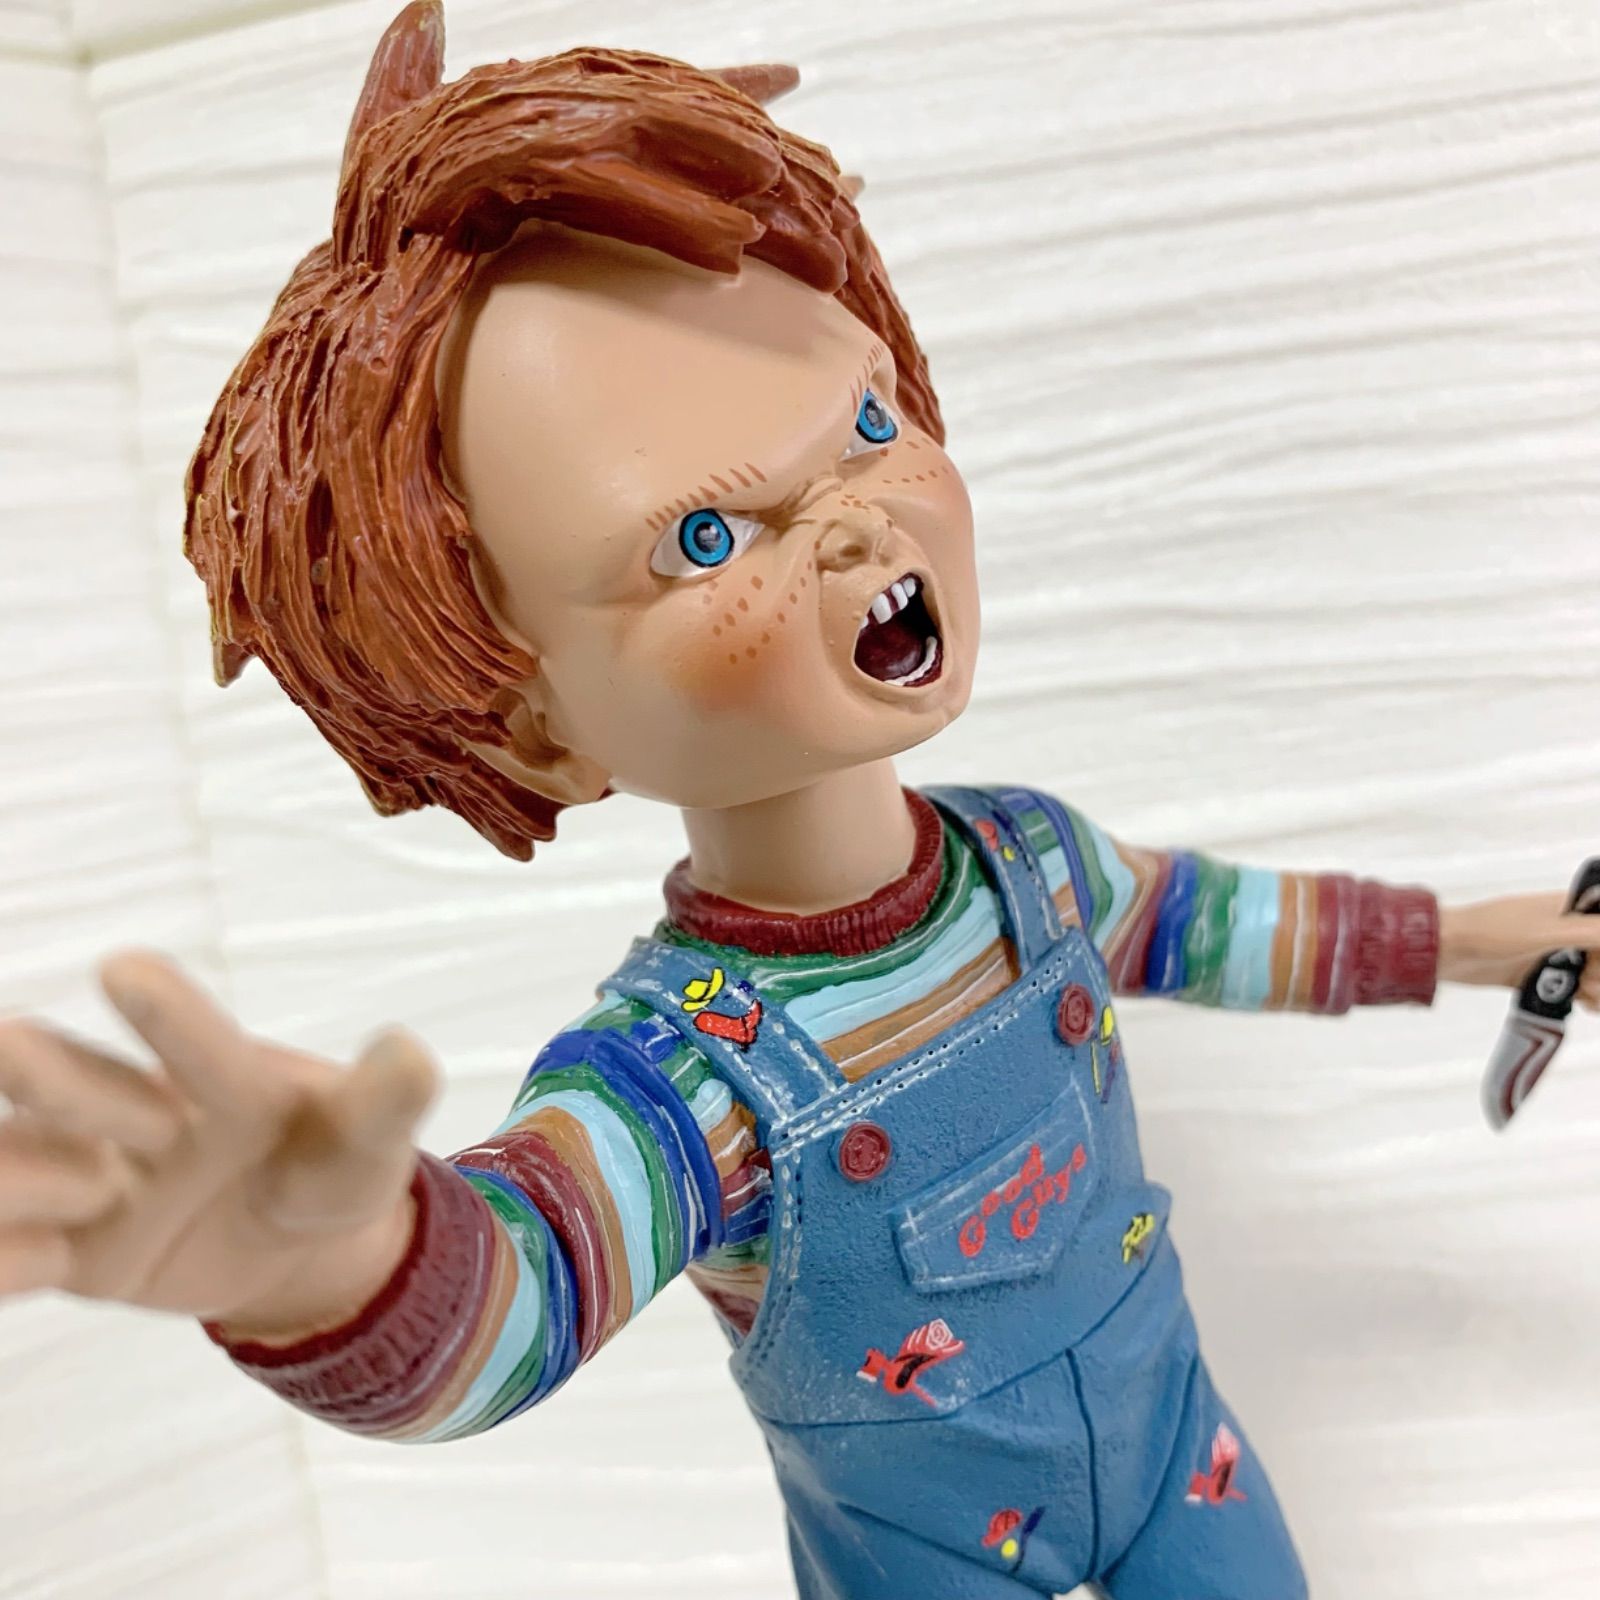 チャッキー 人形 チャイルドプレイ【 Chucky 】約61cm 公式ライセンス ...